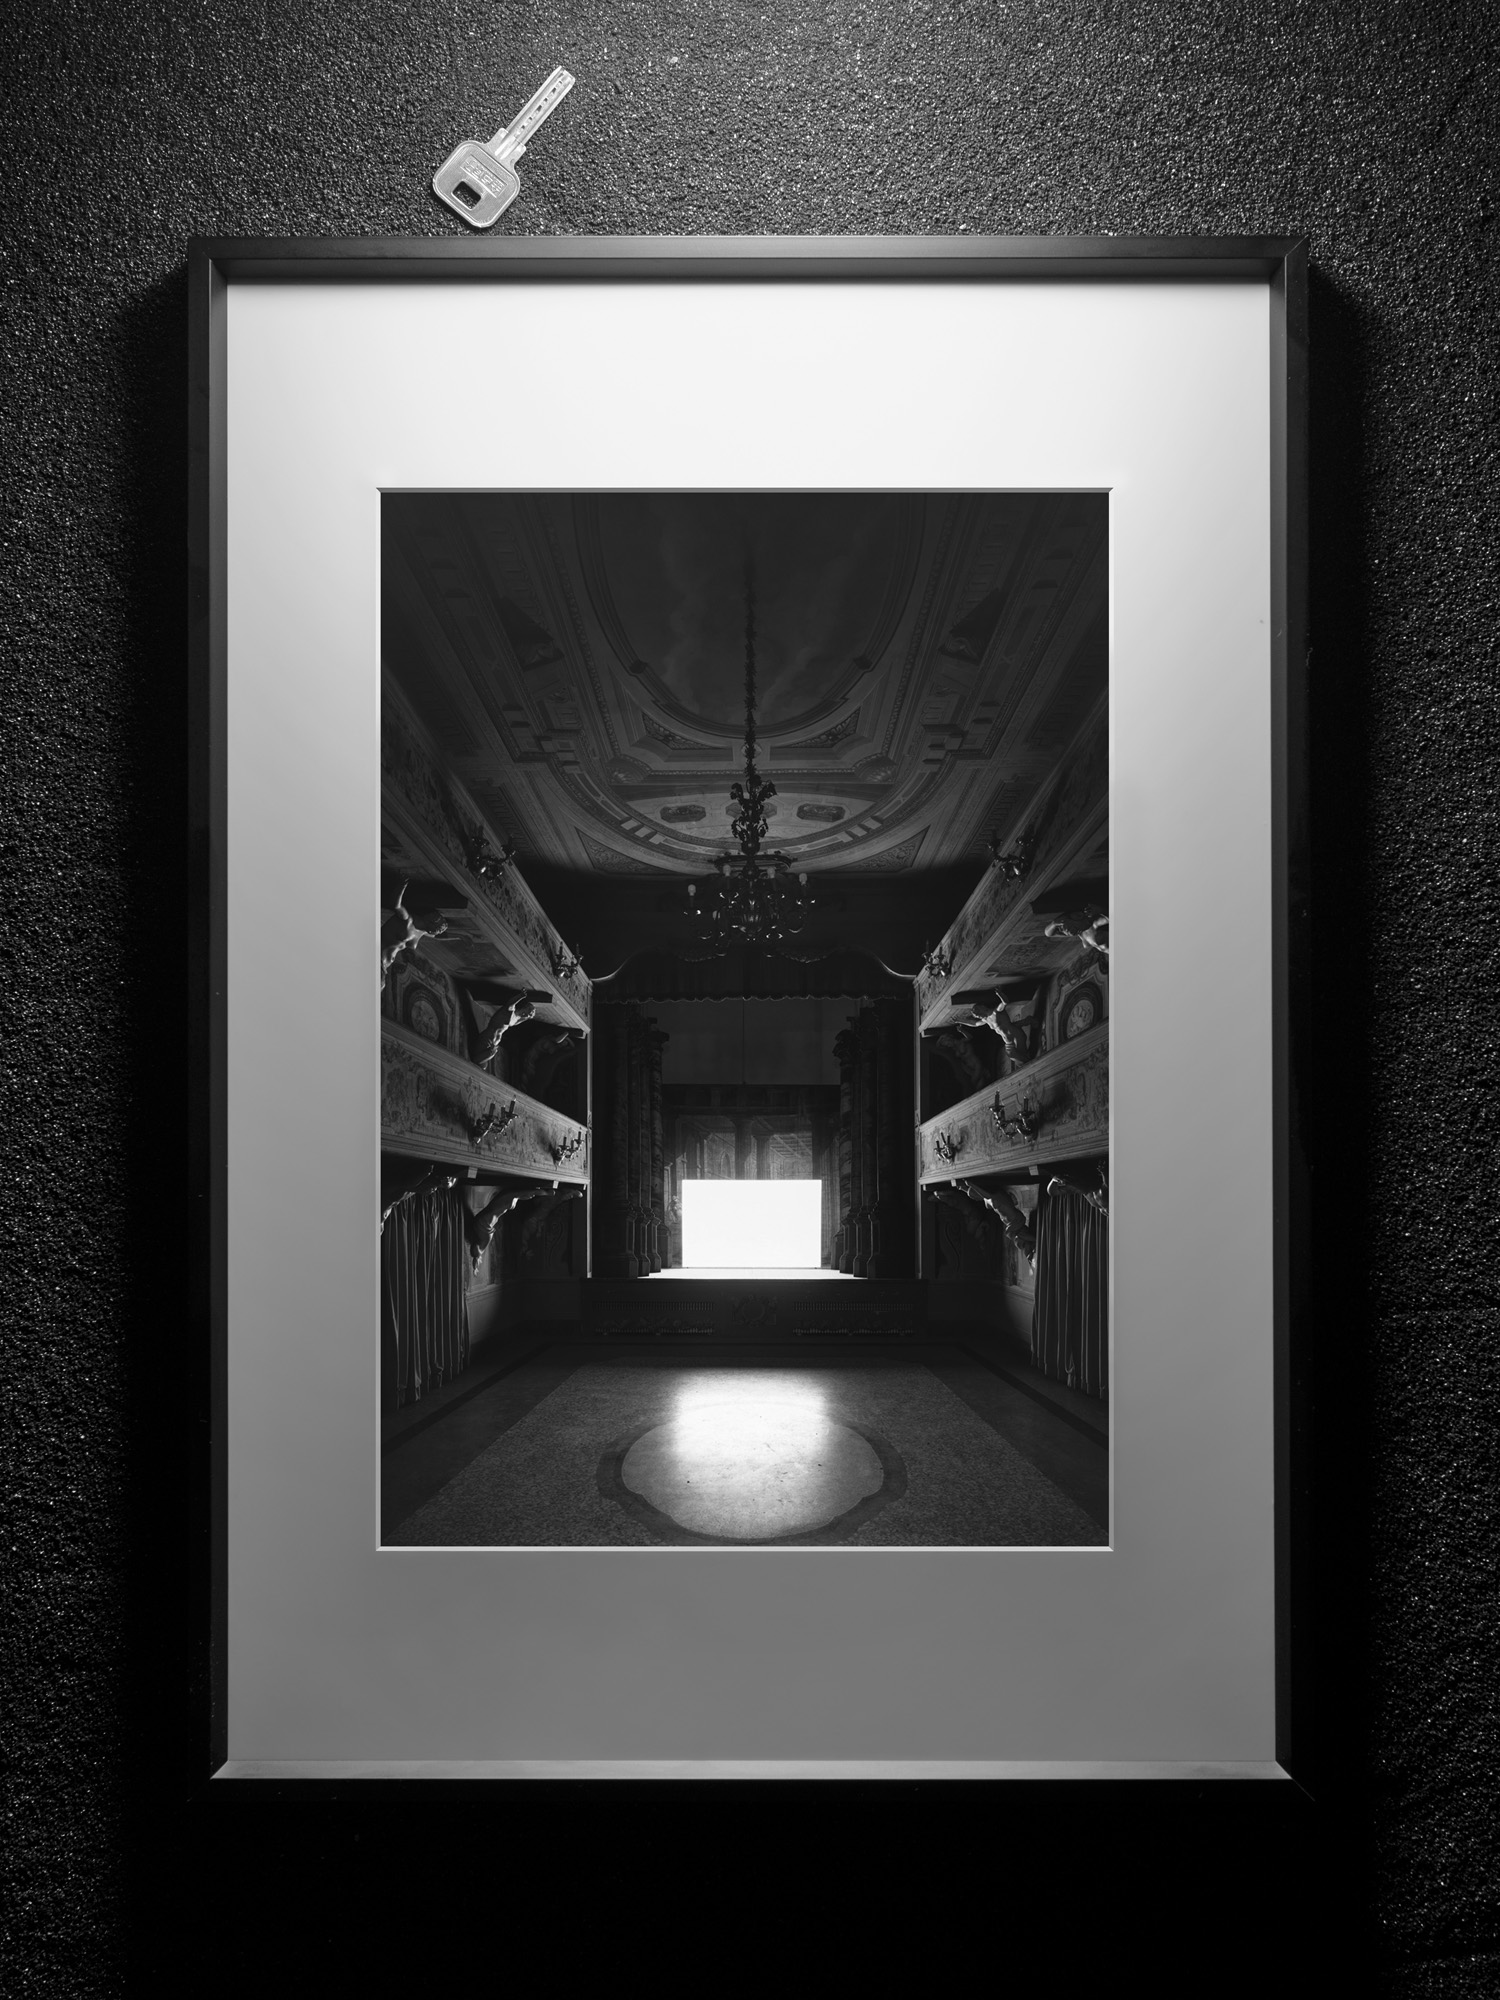 杉本博司摄影作品《电影院》系列 客厅房间玄关艺术装饰画挂画